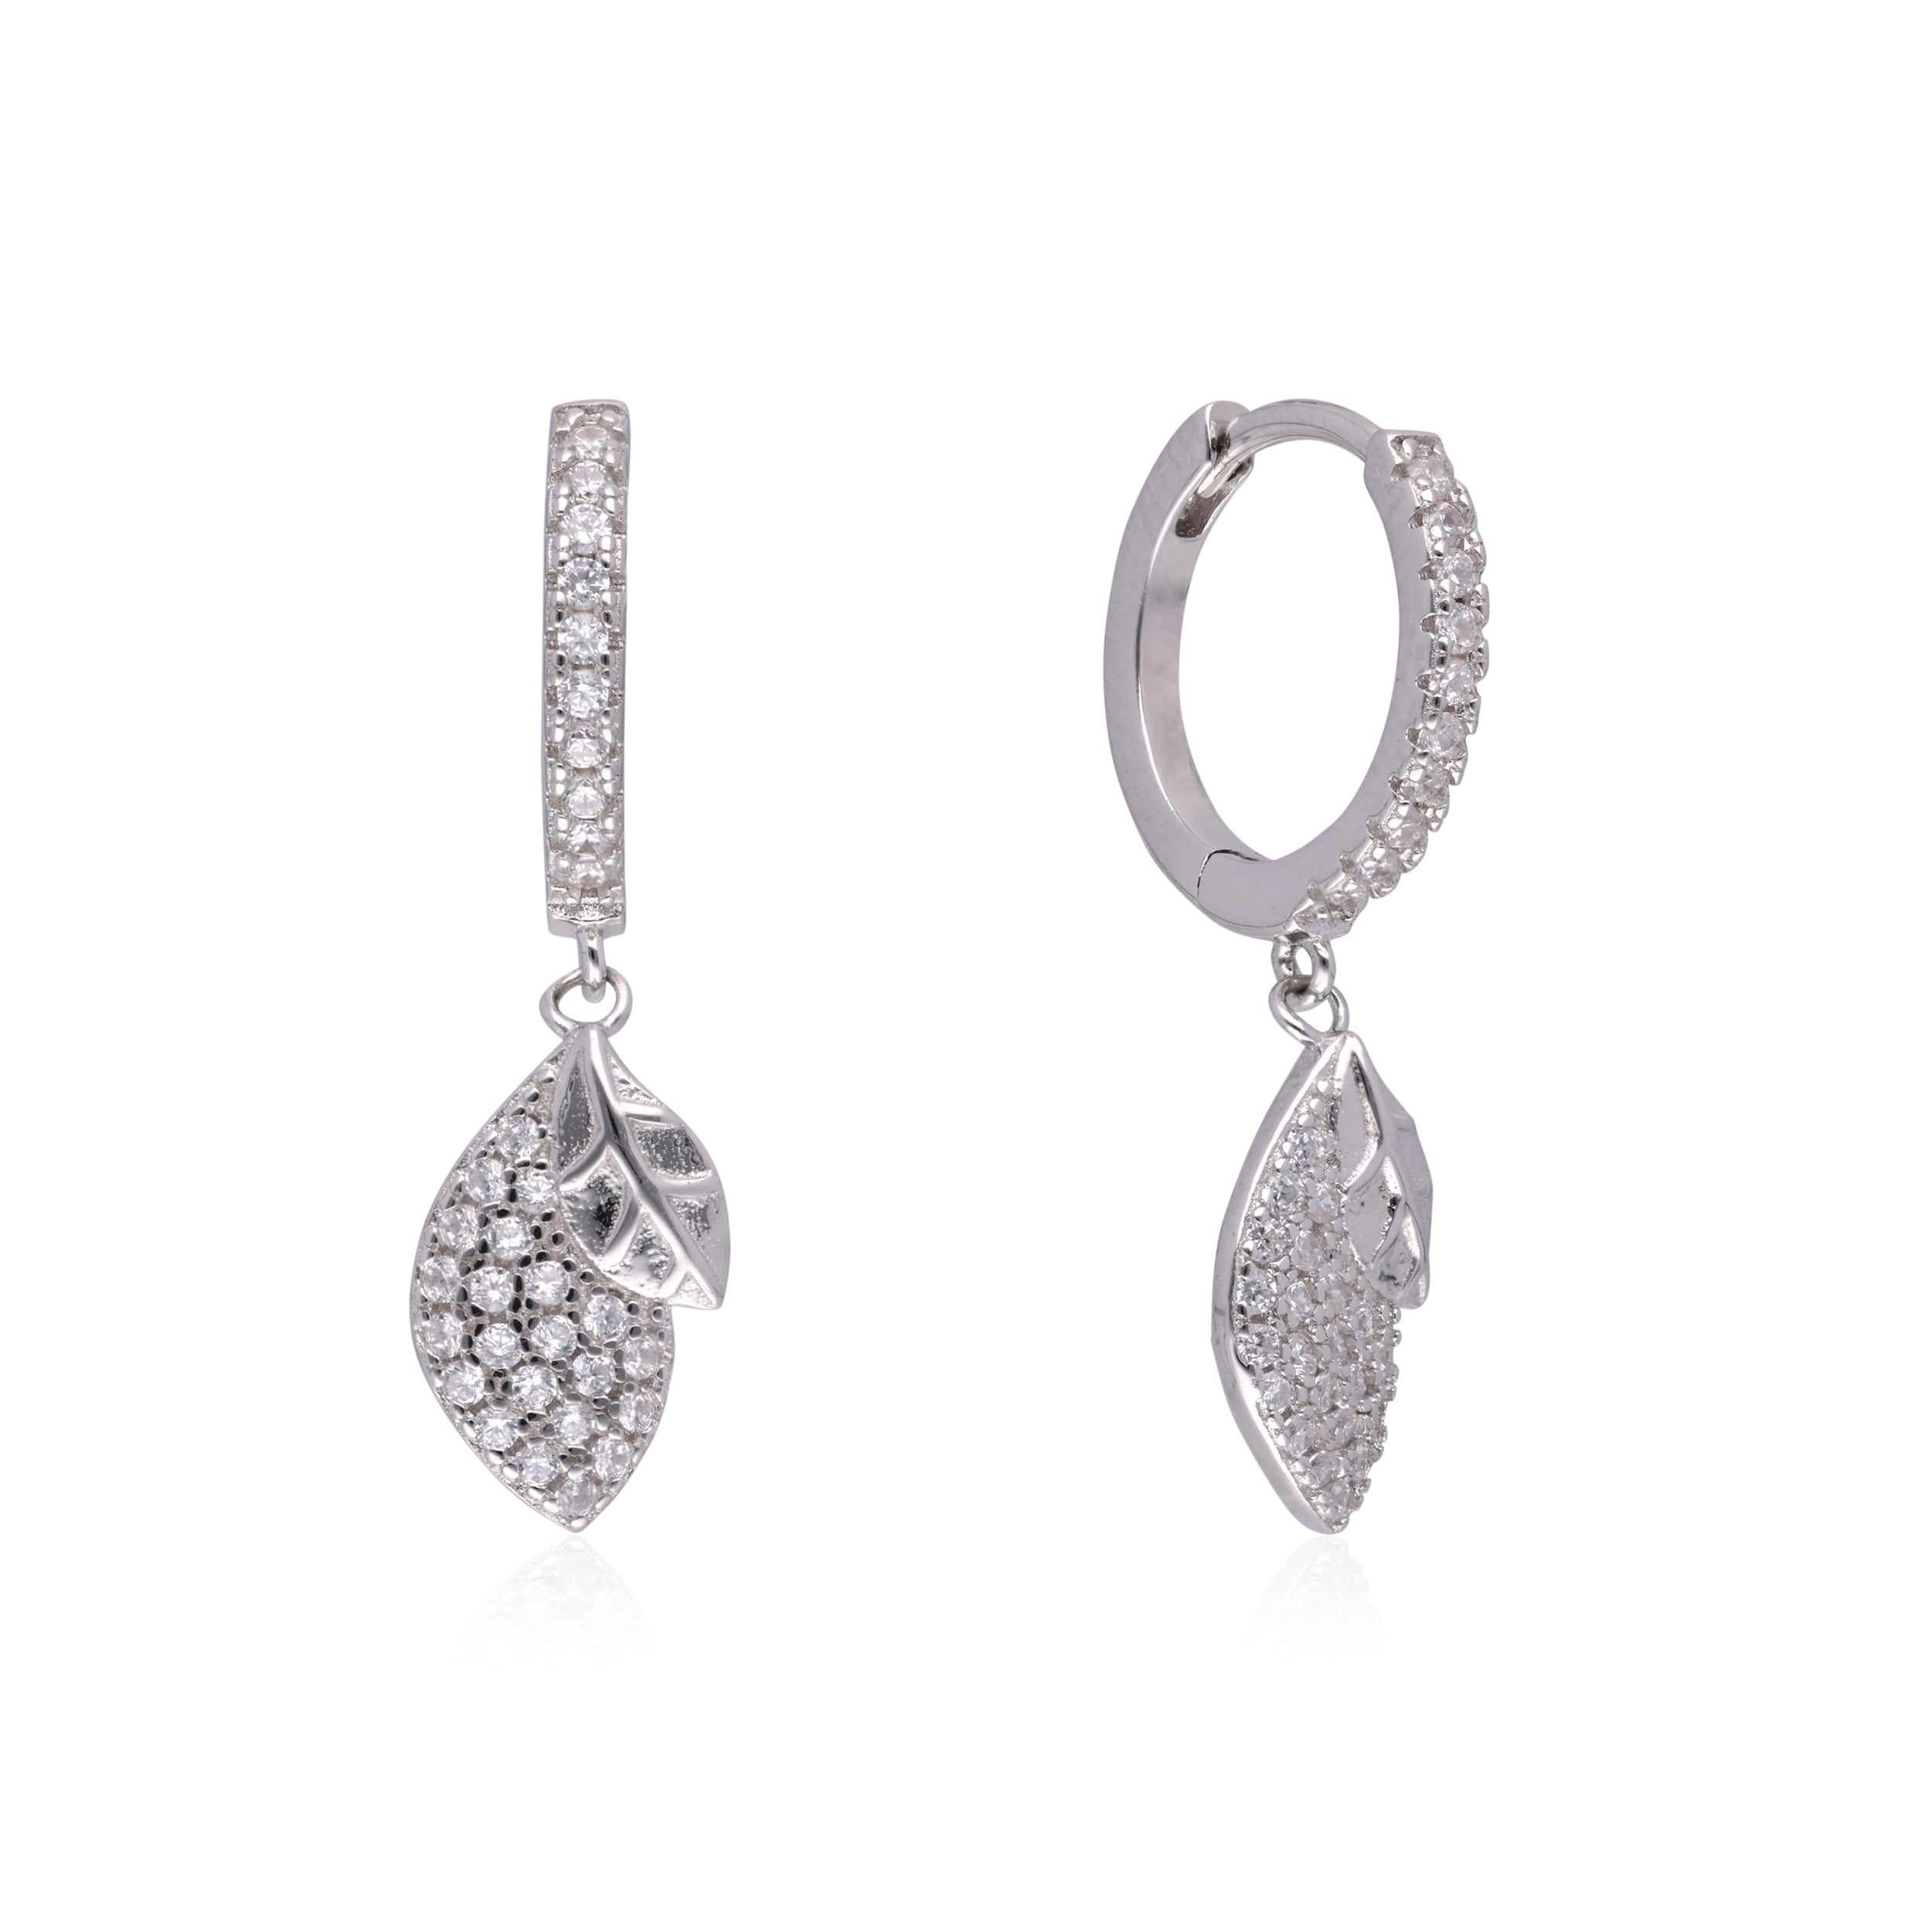 Pave Diamond Leaf Dangle Earrings | SKU : 0003109205, 0003109229, 0003109236